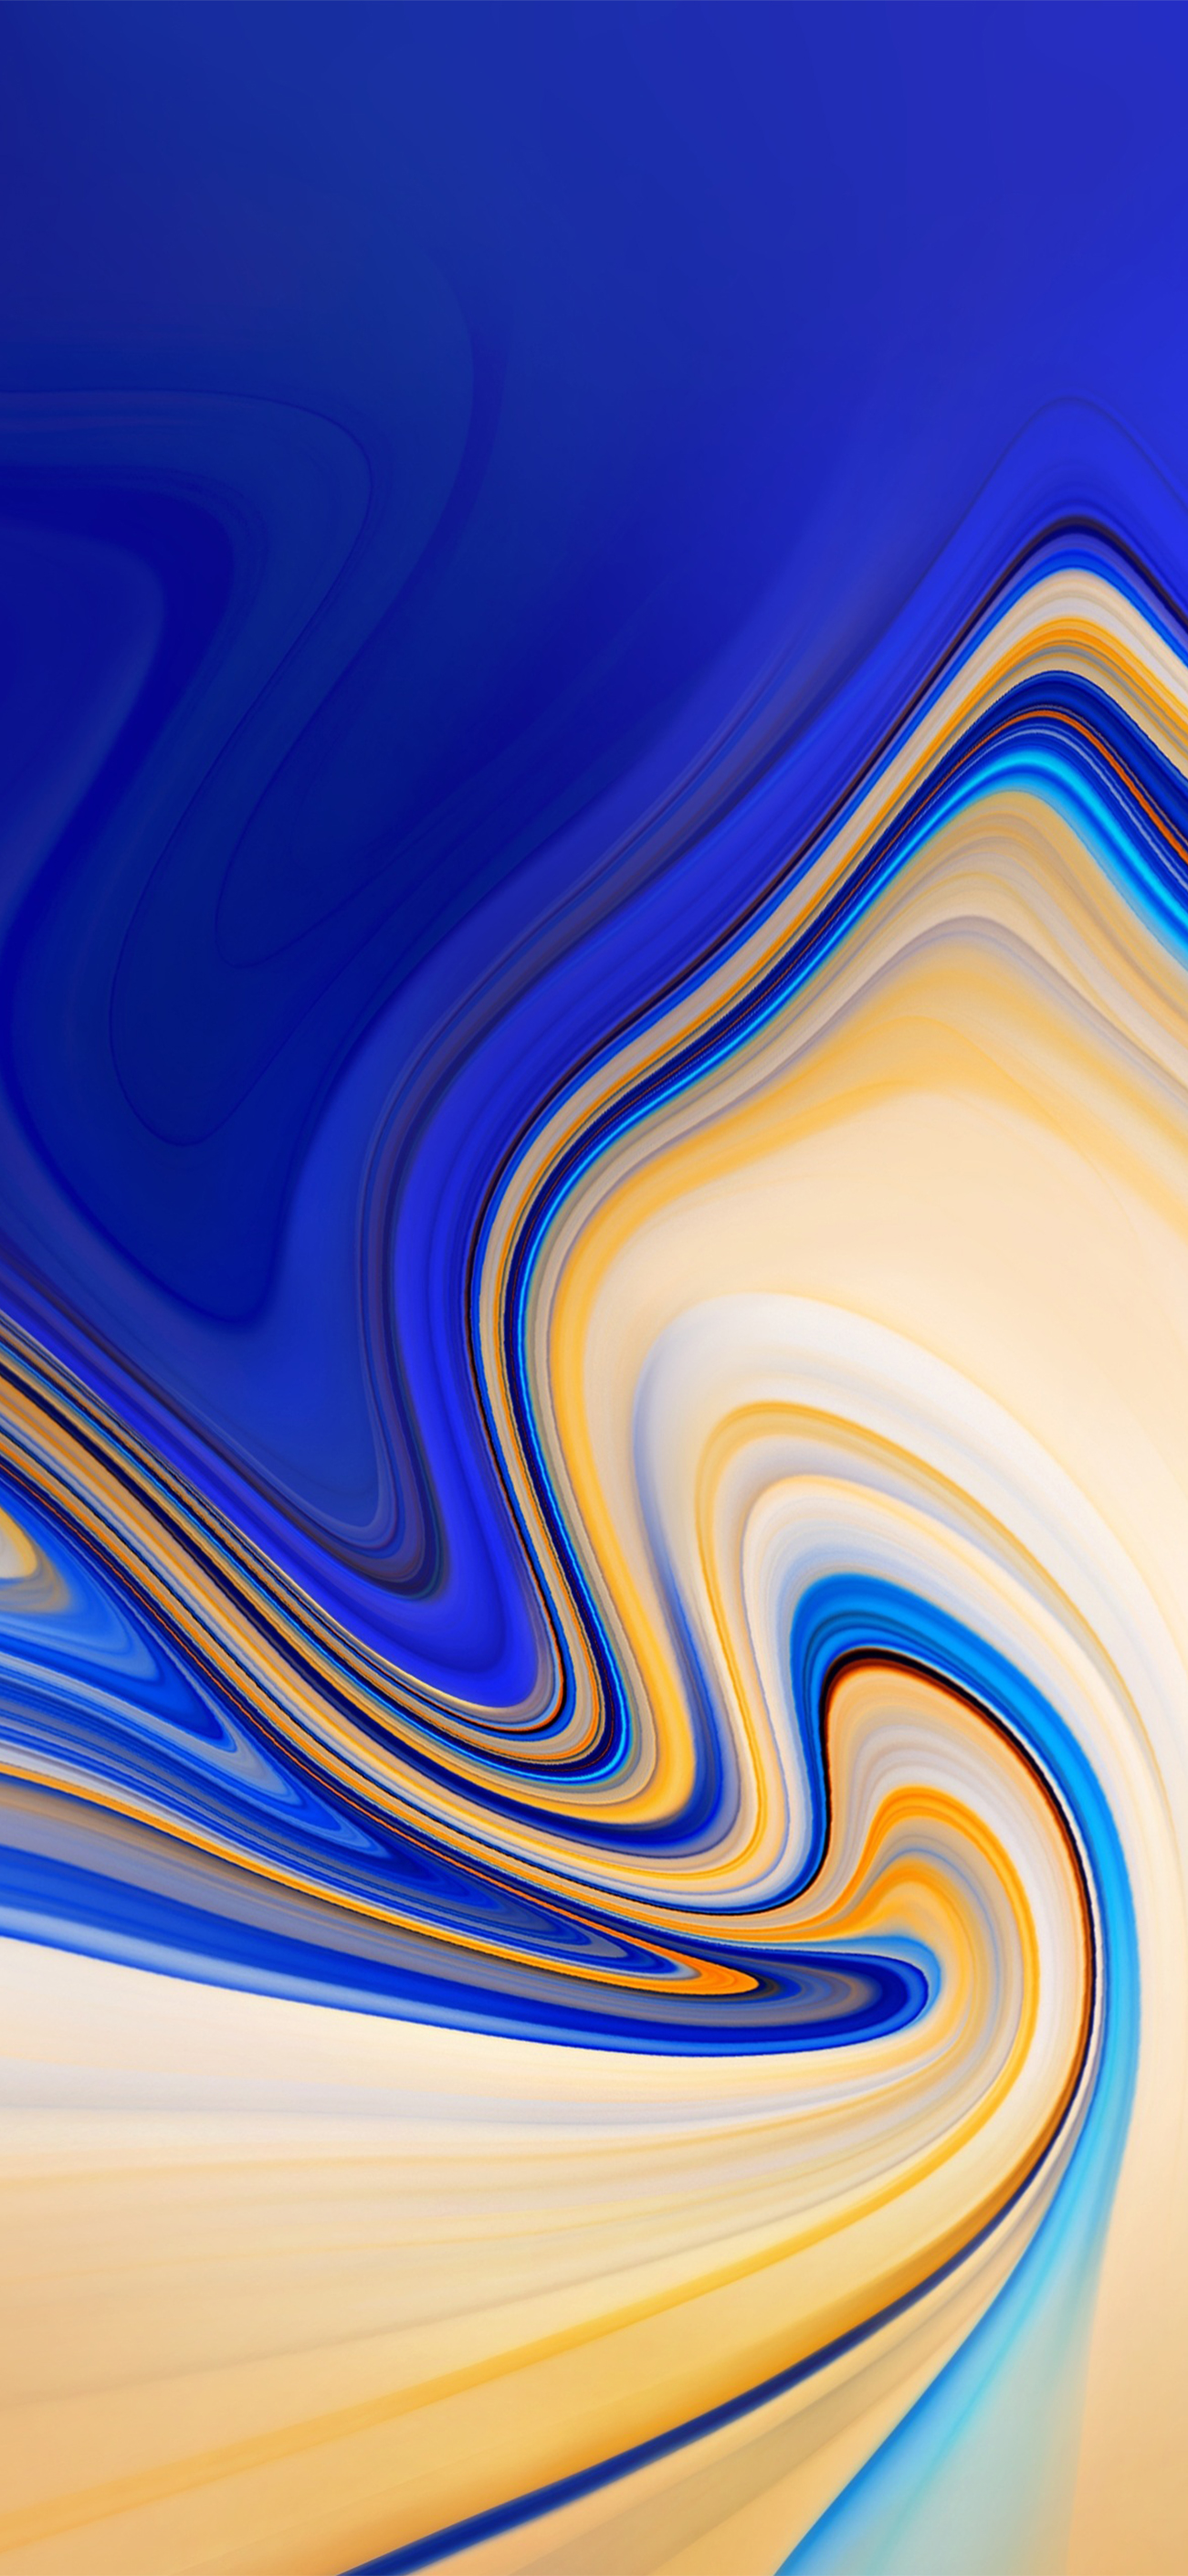 iPhone X Liquid Wallpaper